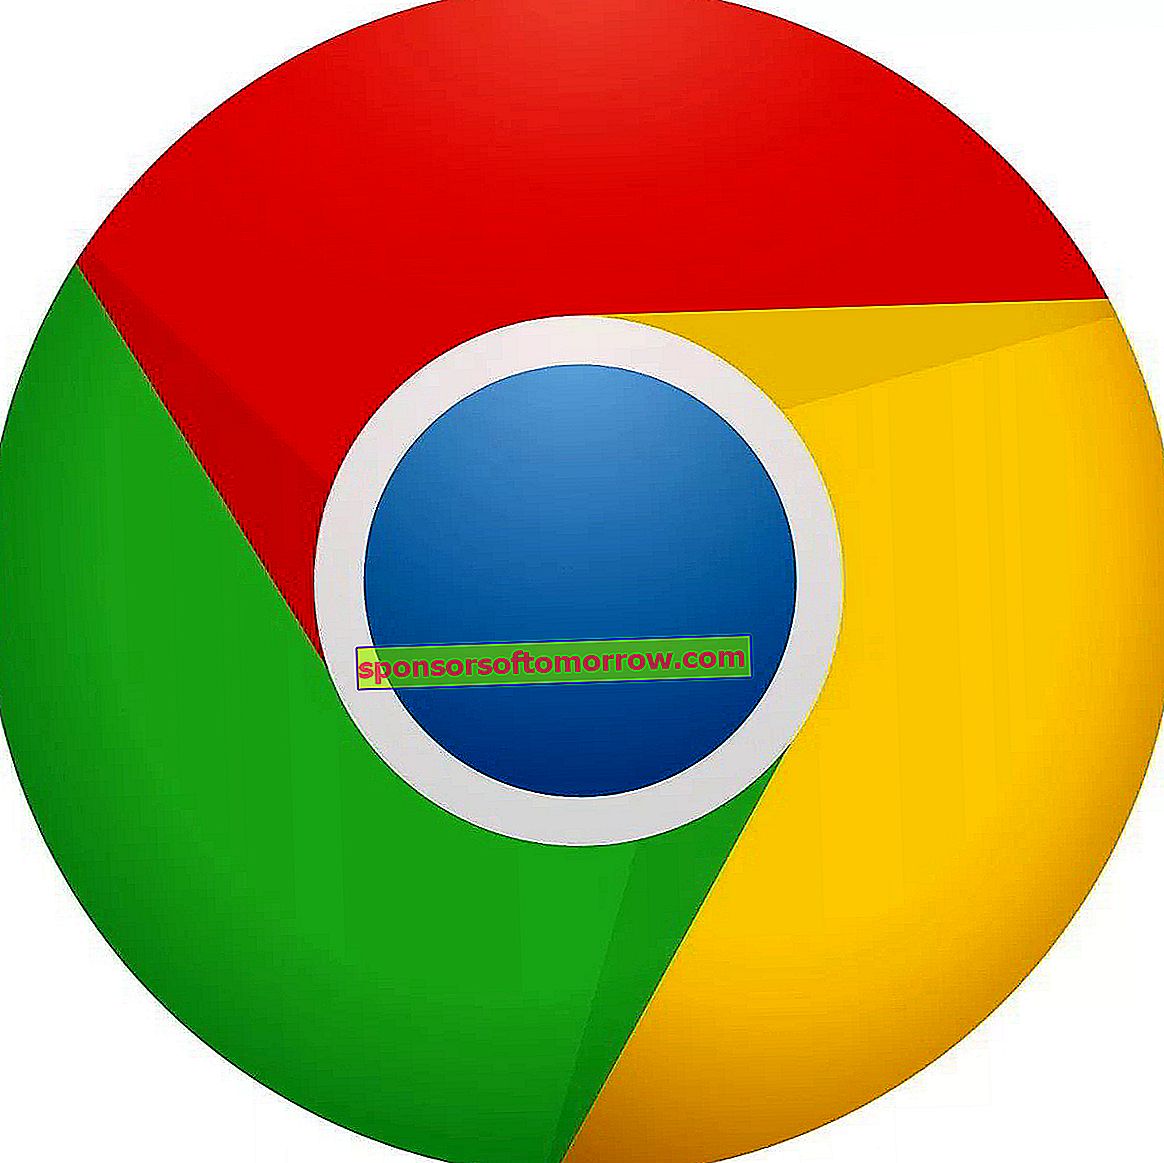 Die 5 besten Chrome-Erweiterungen zum Aufzeichnen des Bildschirms